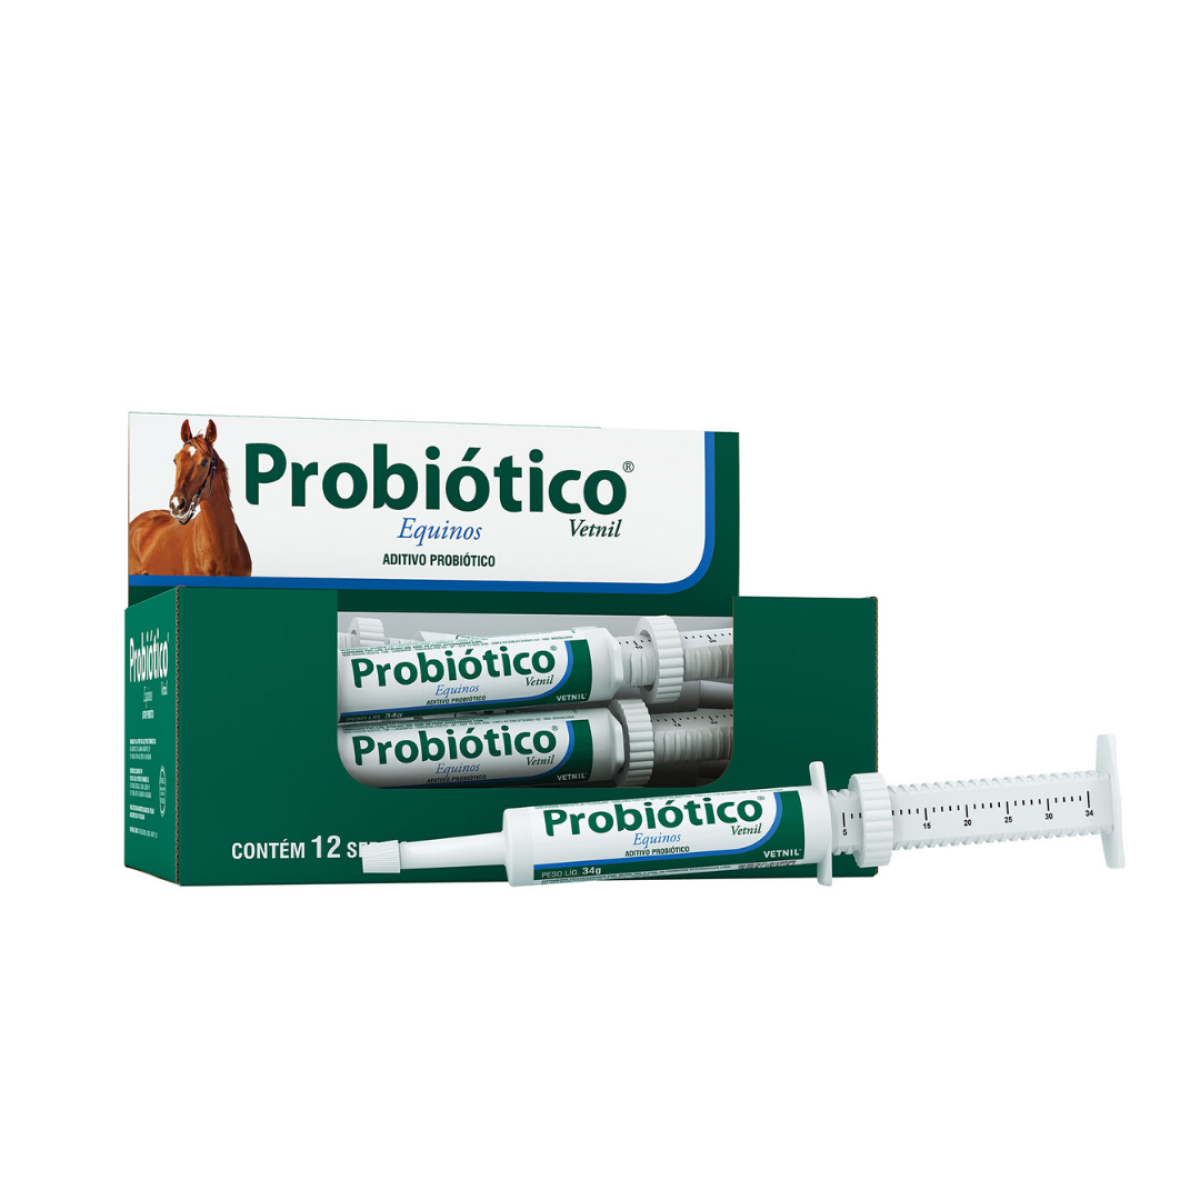 Probiotico Vetnil 34g 